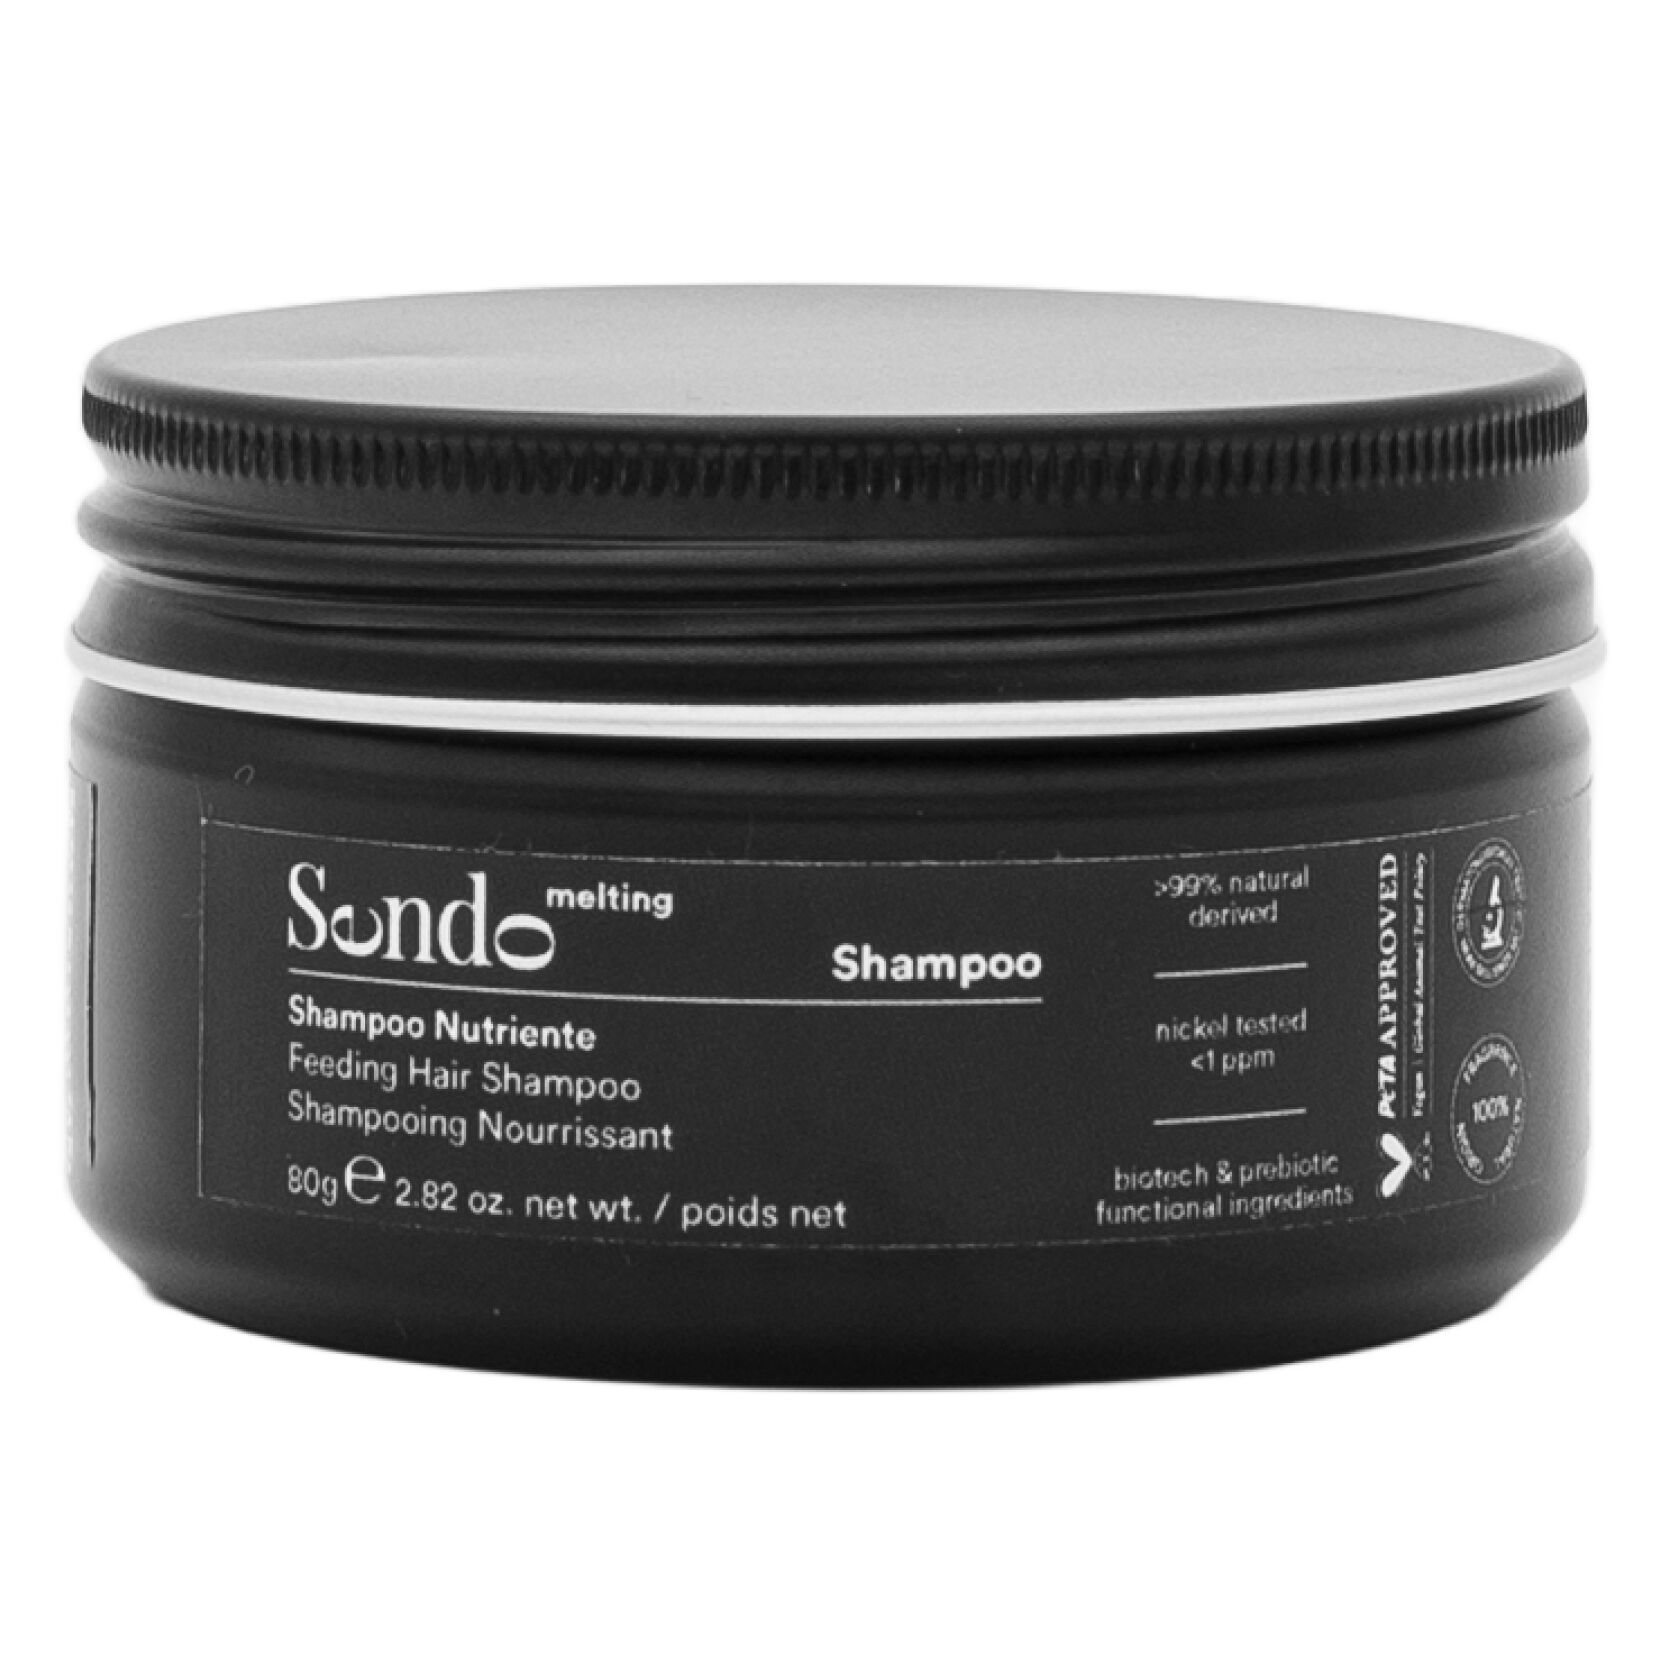 Питательный шампунь для волос восковой консистенции Sendo Melting, 80 гр